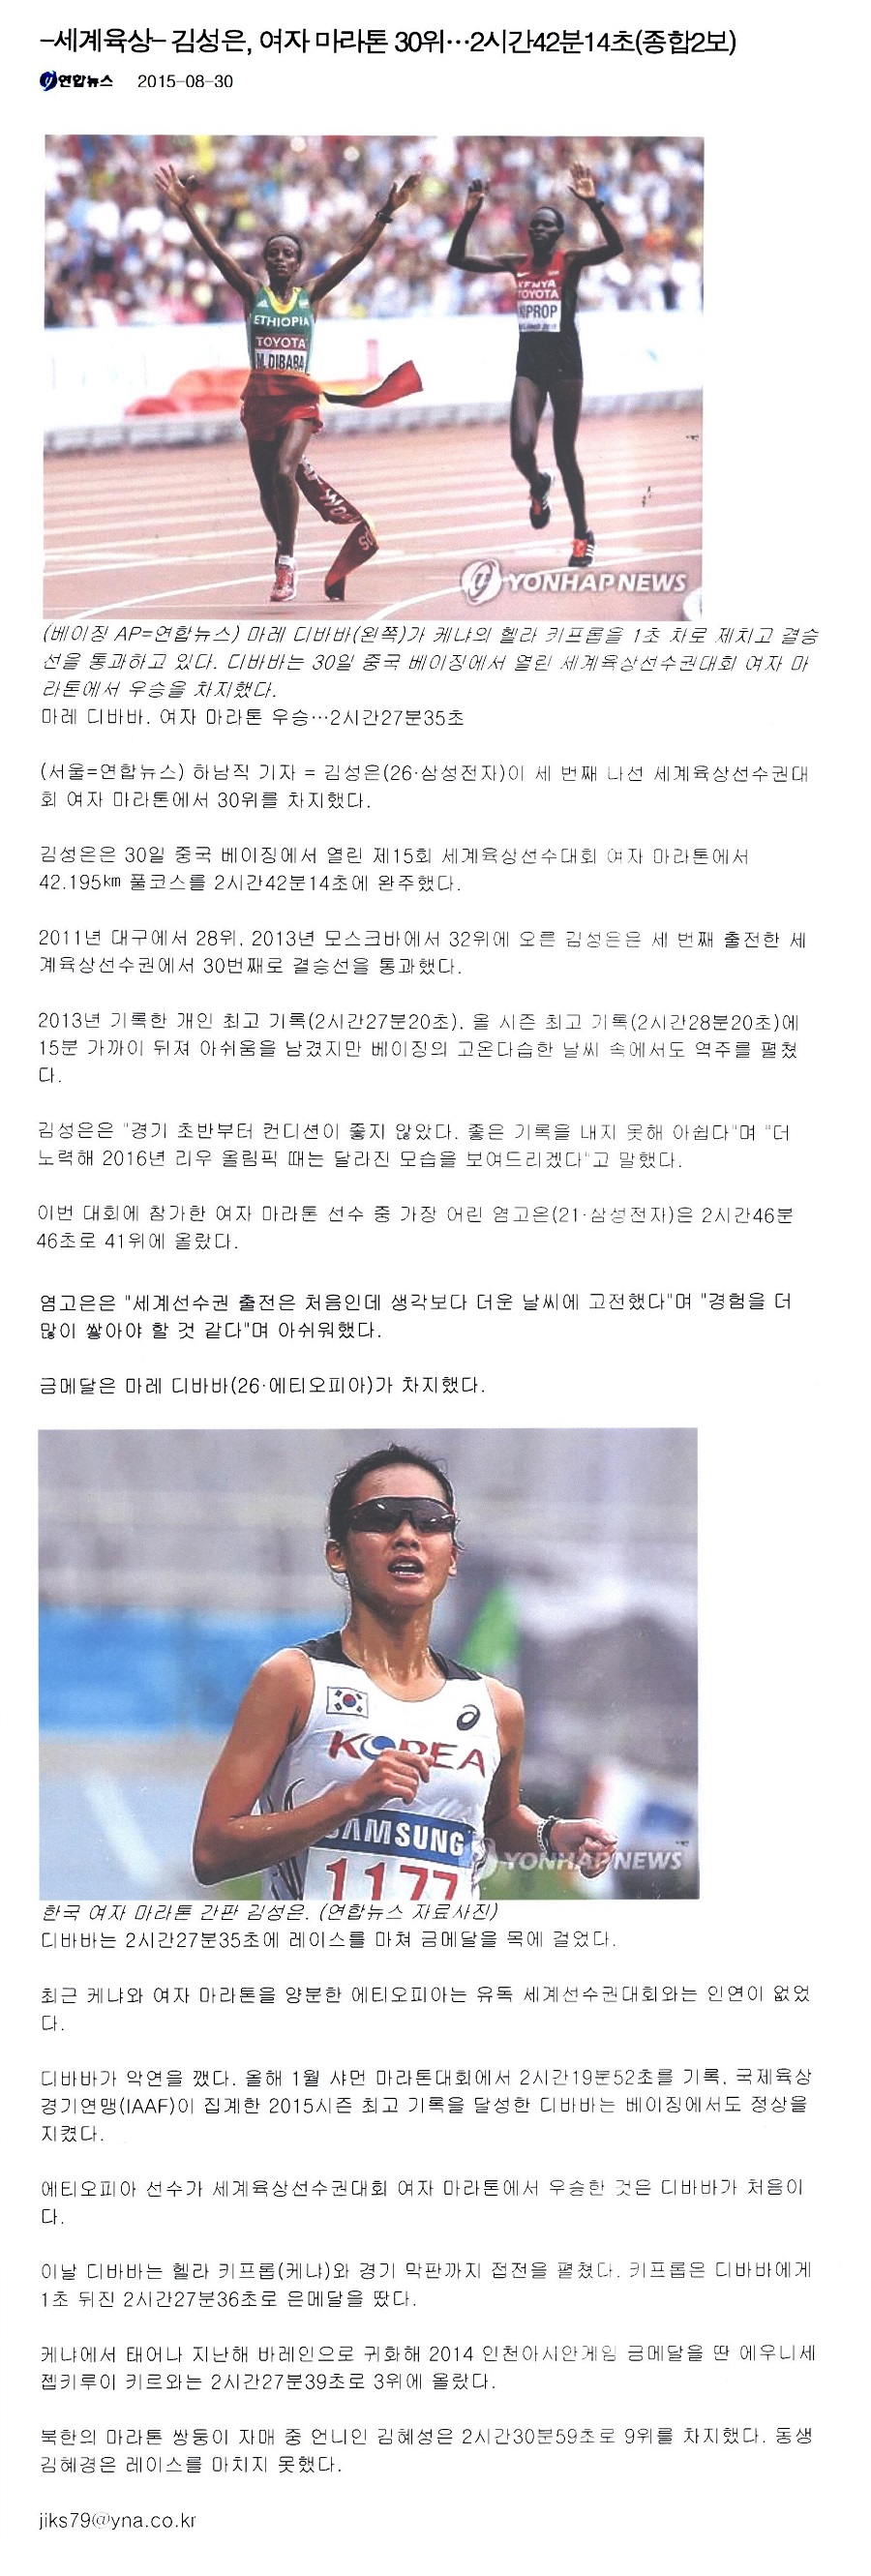 [세계육상] 김성은, 여자마라톤 30위…2시간42분14초